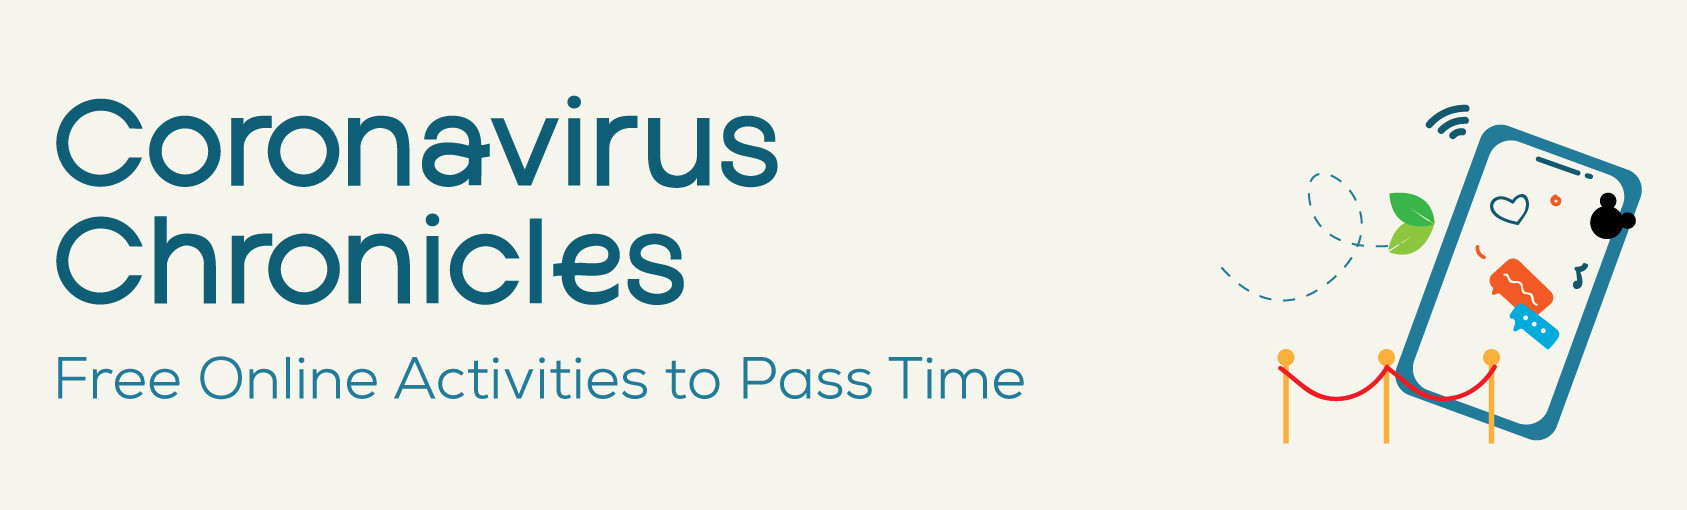 Coronavirus Chronicles: Free Online Activities to Pass Time banner